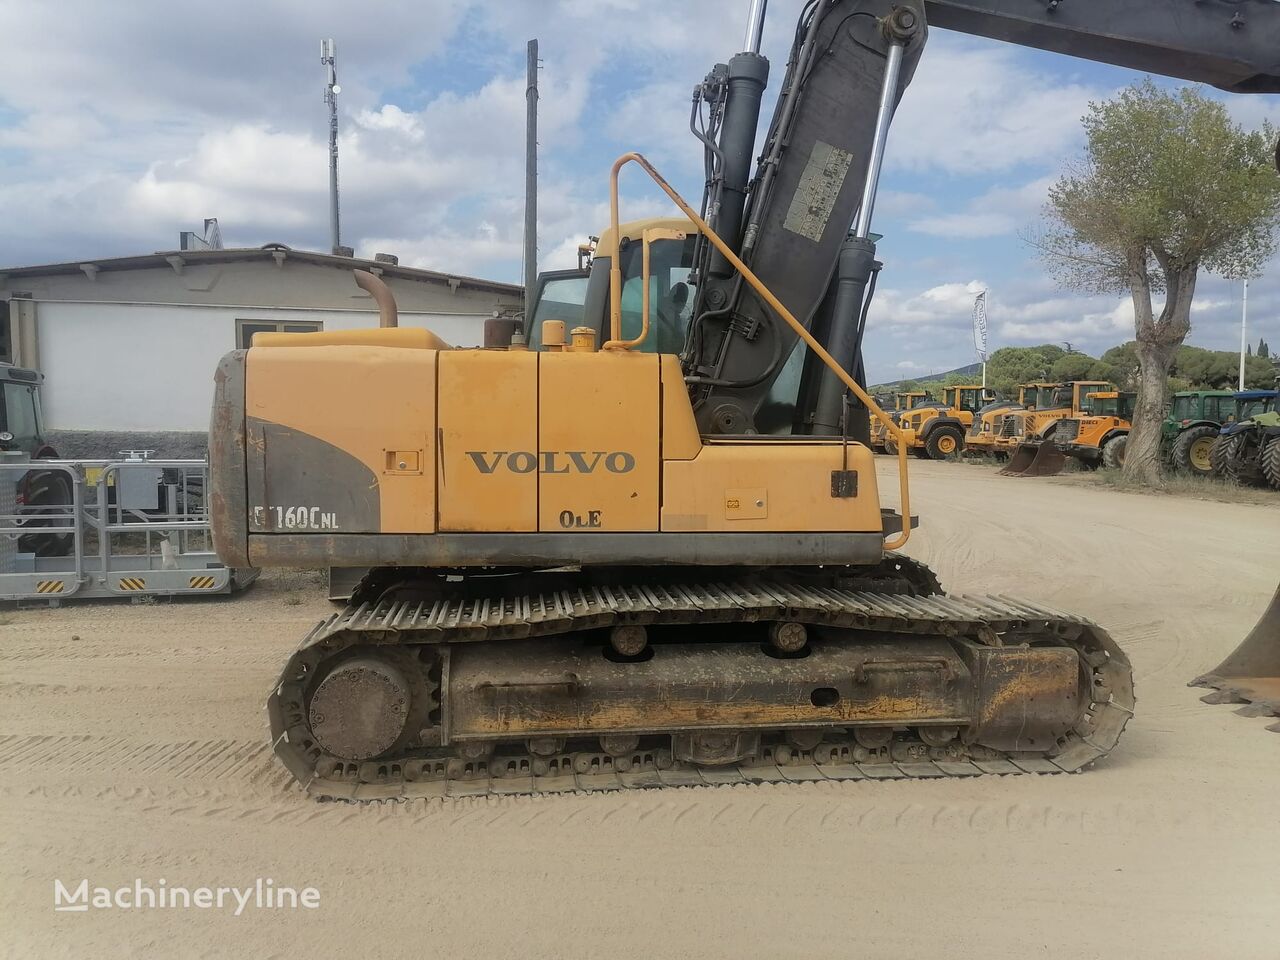 Volvo EC160CNL tracked excavator